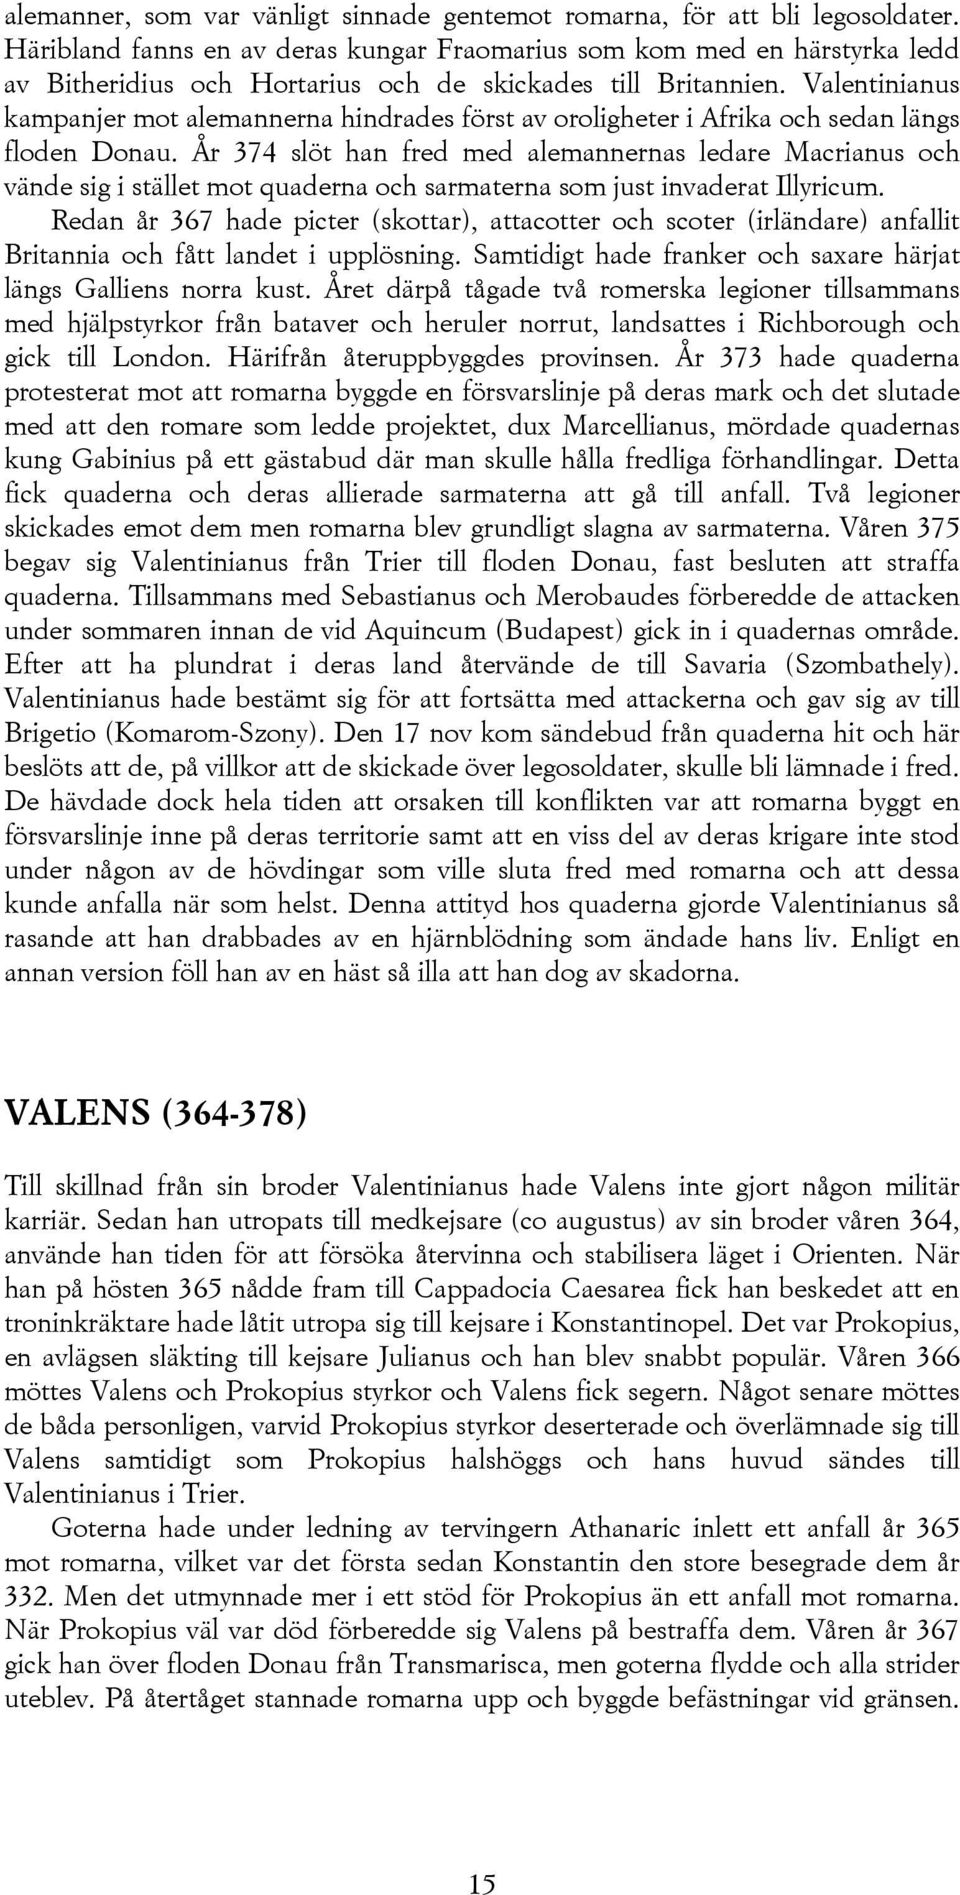 Valentinianus kampanjer mot alemannerna hindrades först av oroligheter i Afrika och sedan längs floden Donau.